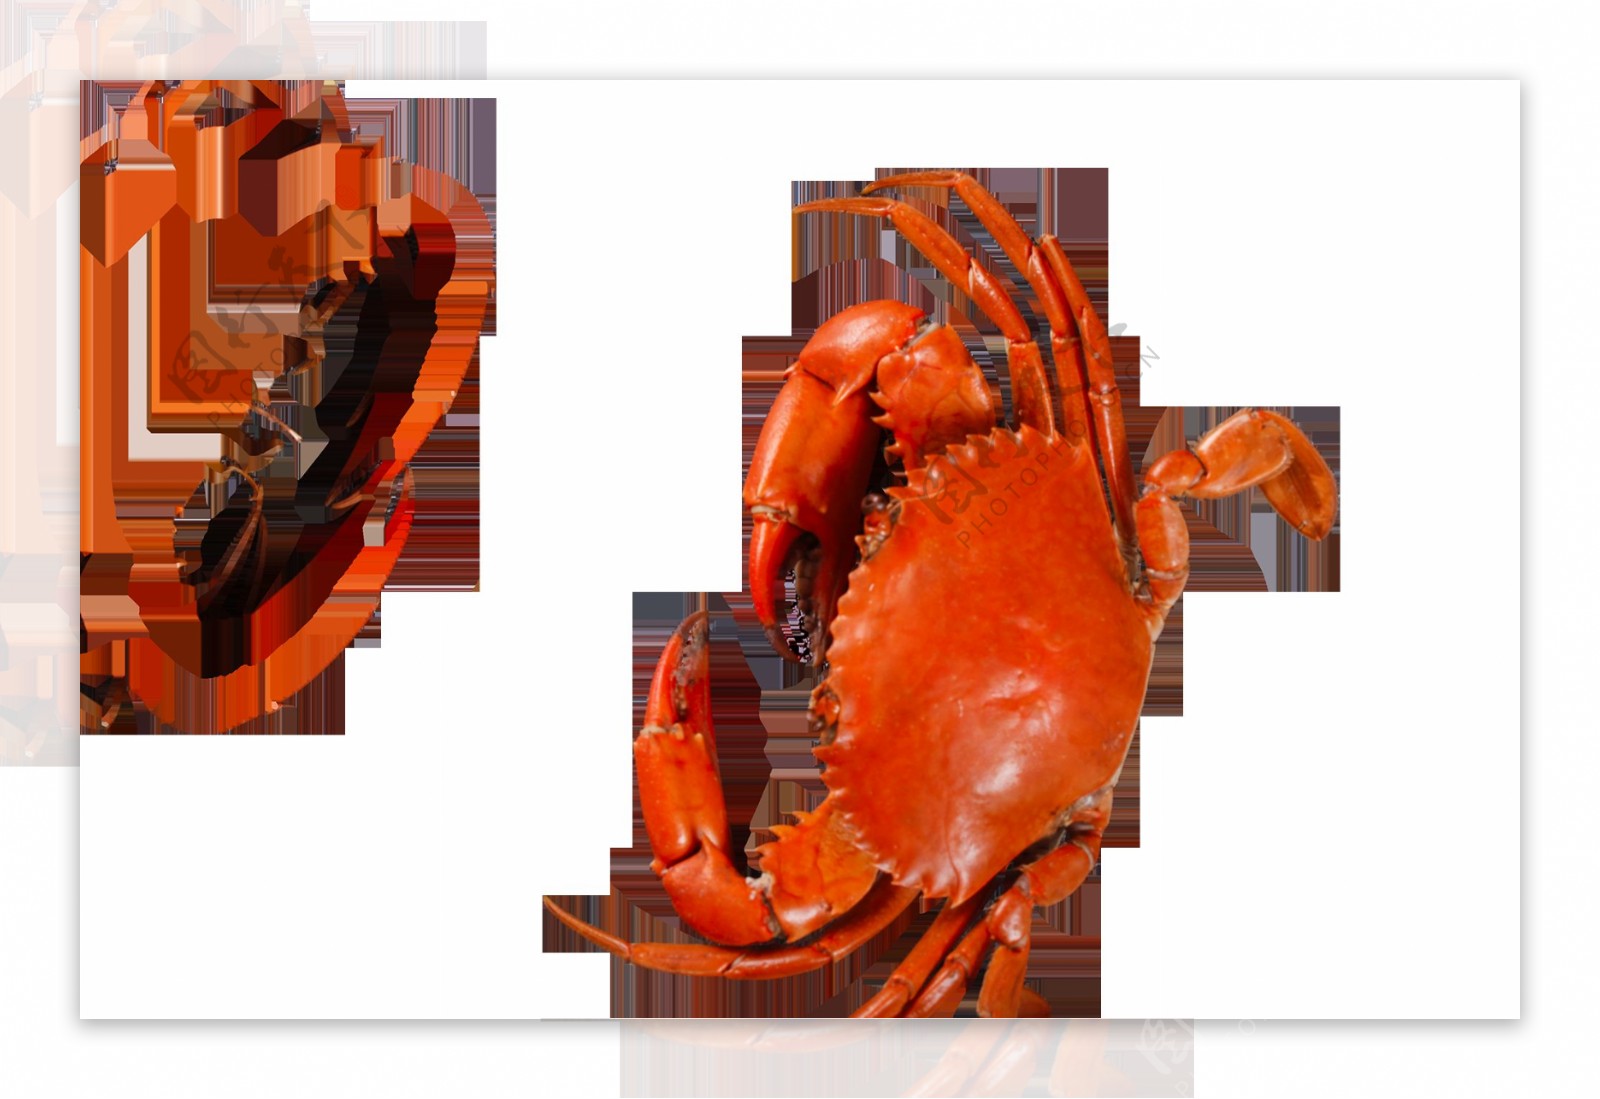 螃蟹红壳烹饪食材海报素材